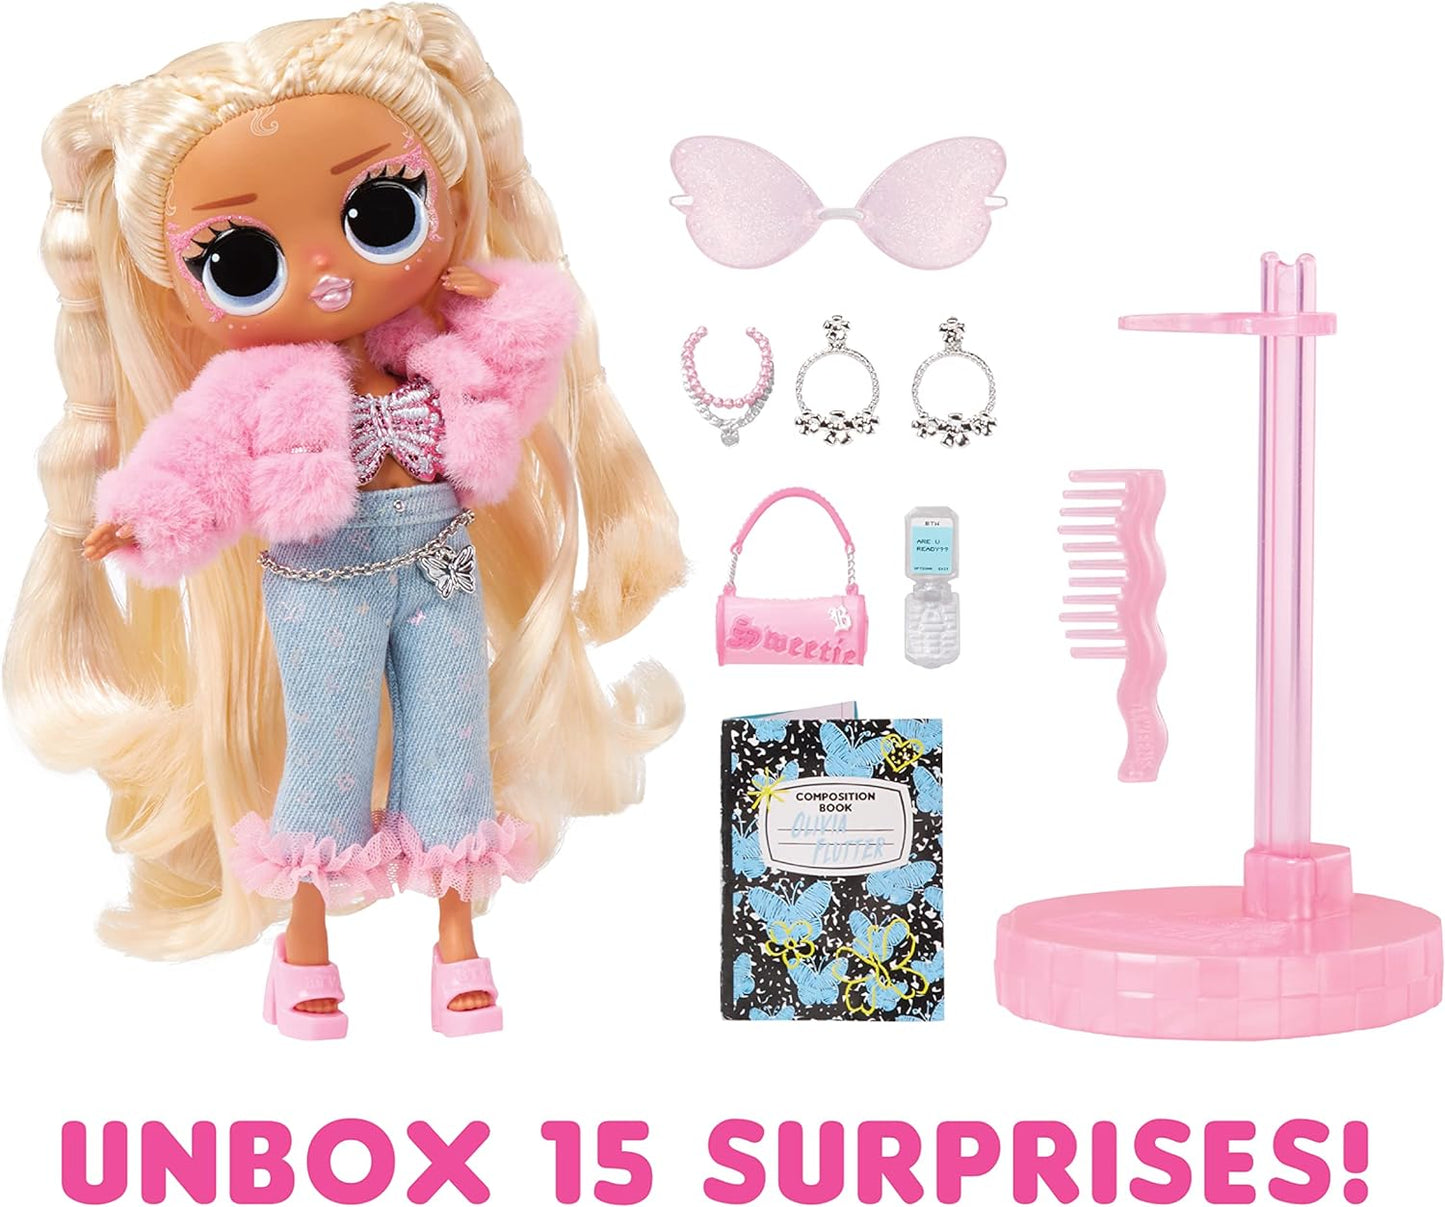 LOL Surprise Boneca fashion Tweens Série 4 - OLIVIA FLUTTER - Unbox 15 surpresas e acessórios fabulosos - Ótimo presente para crianças de 4 anos ou mais